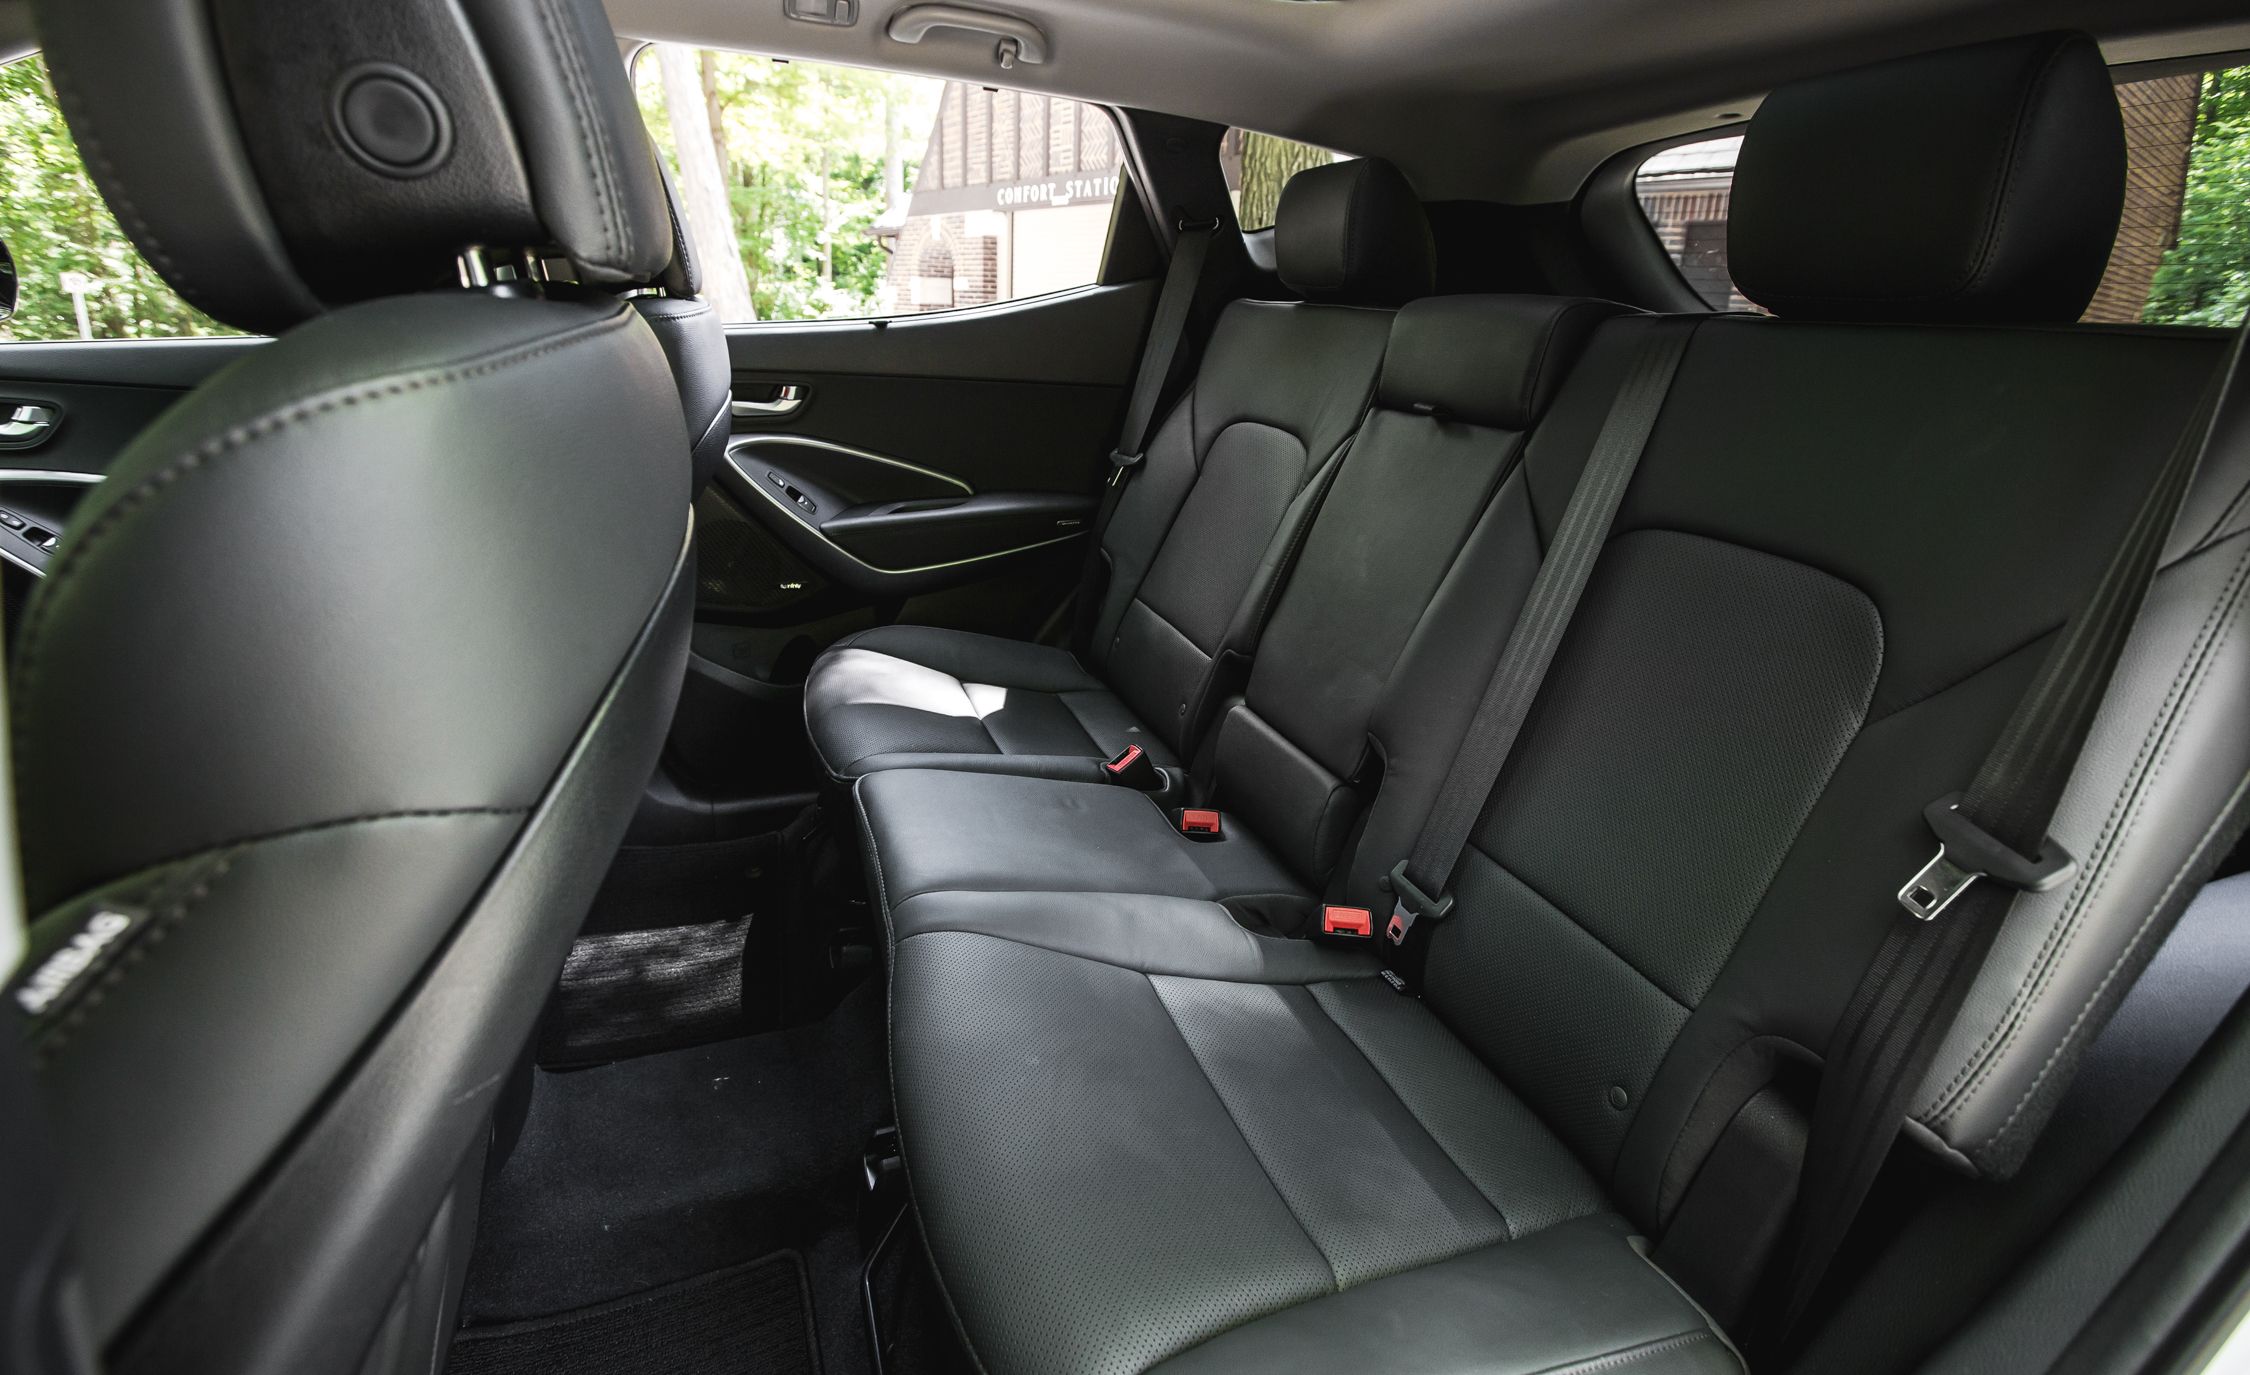 2017 Hyundai Santa Fe Interior Seats Rear (View 8 of 12)